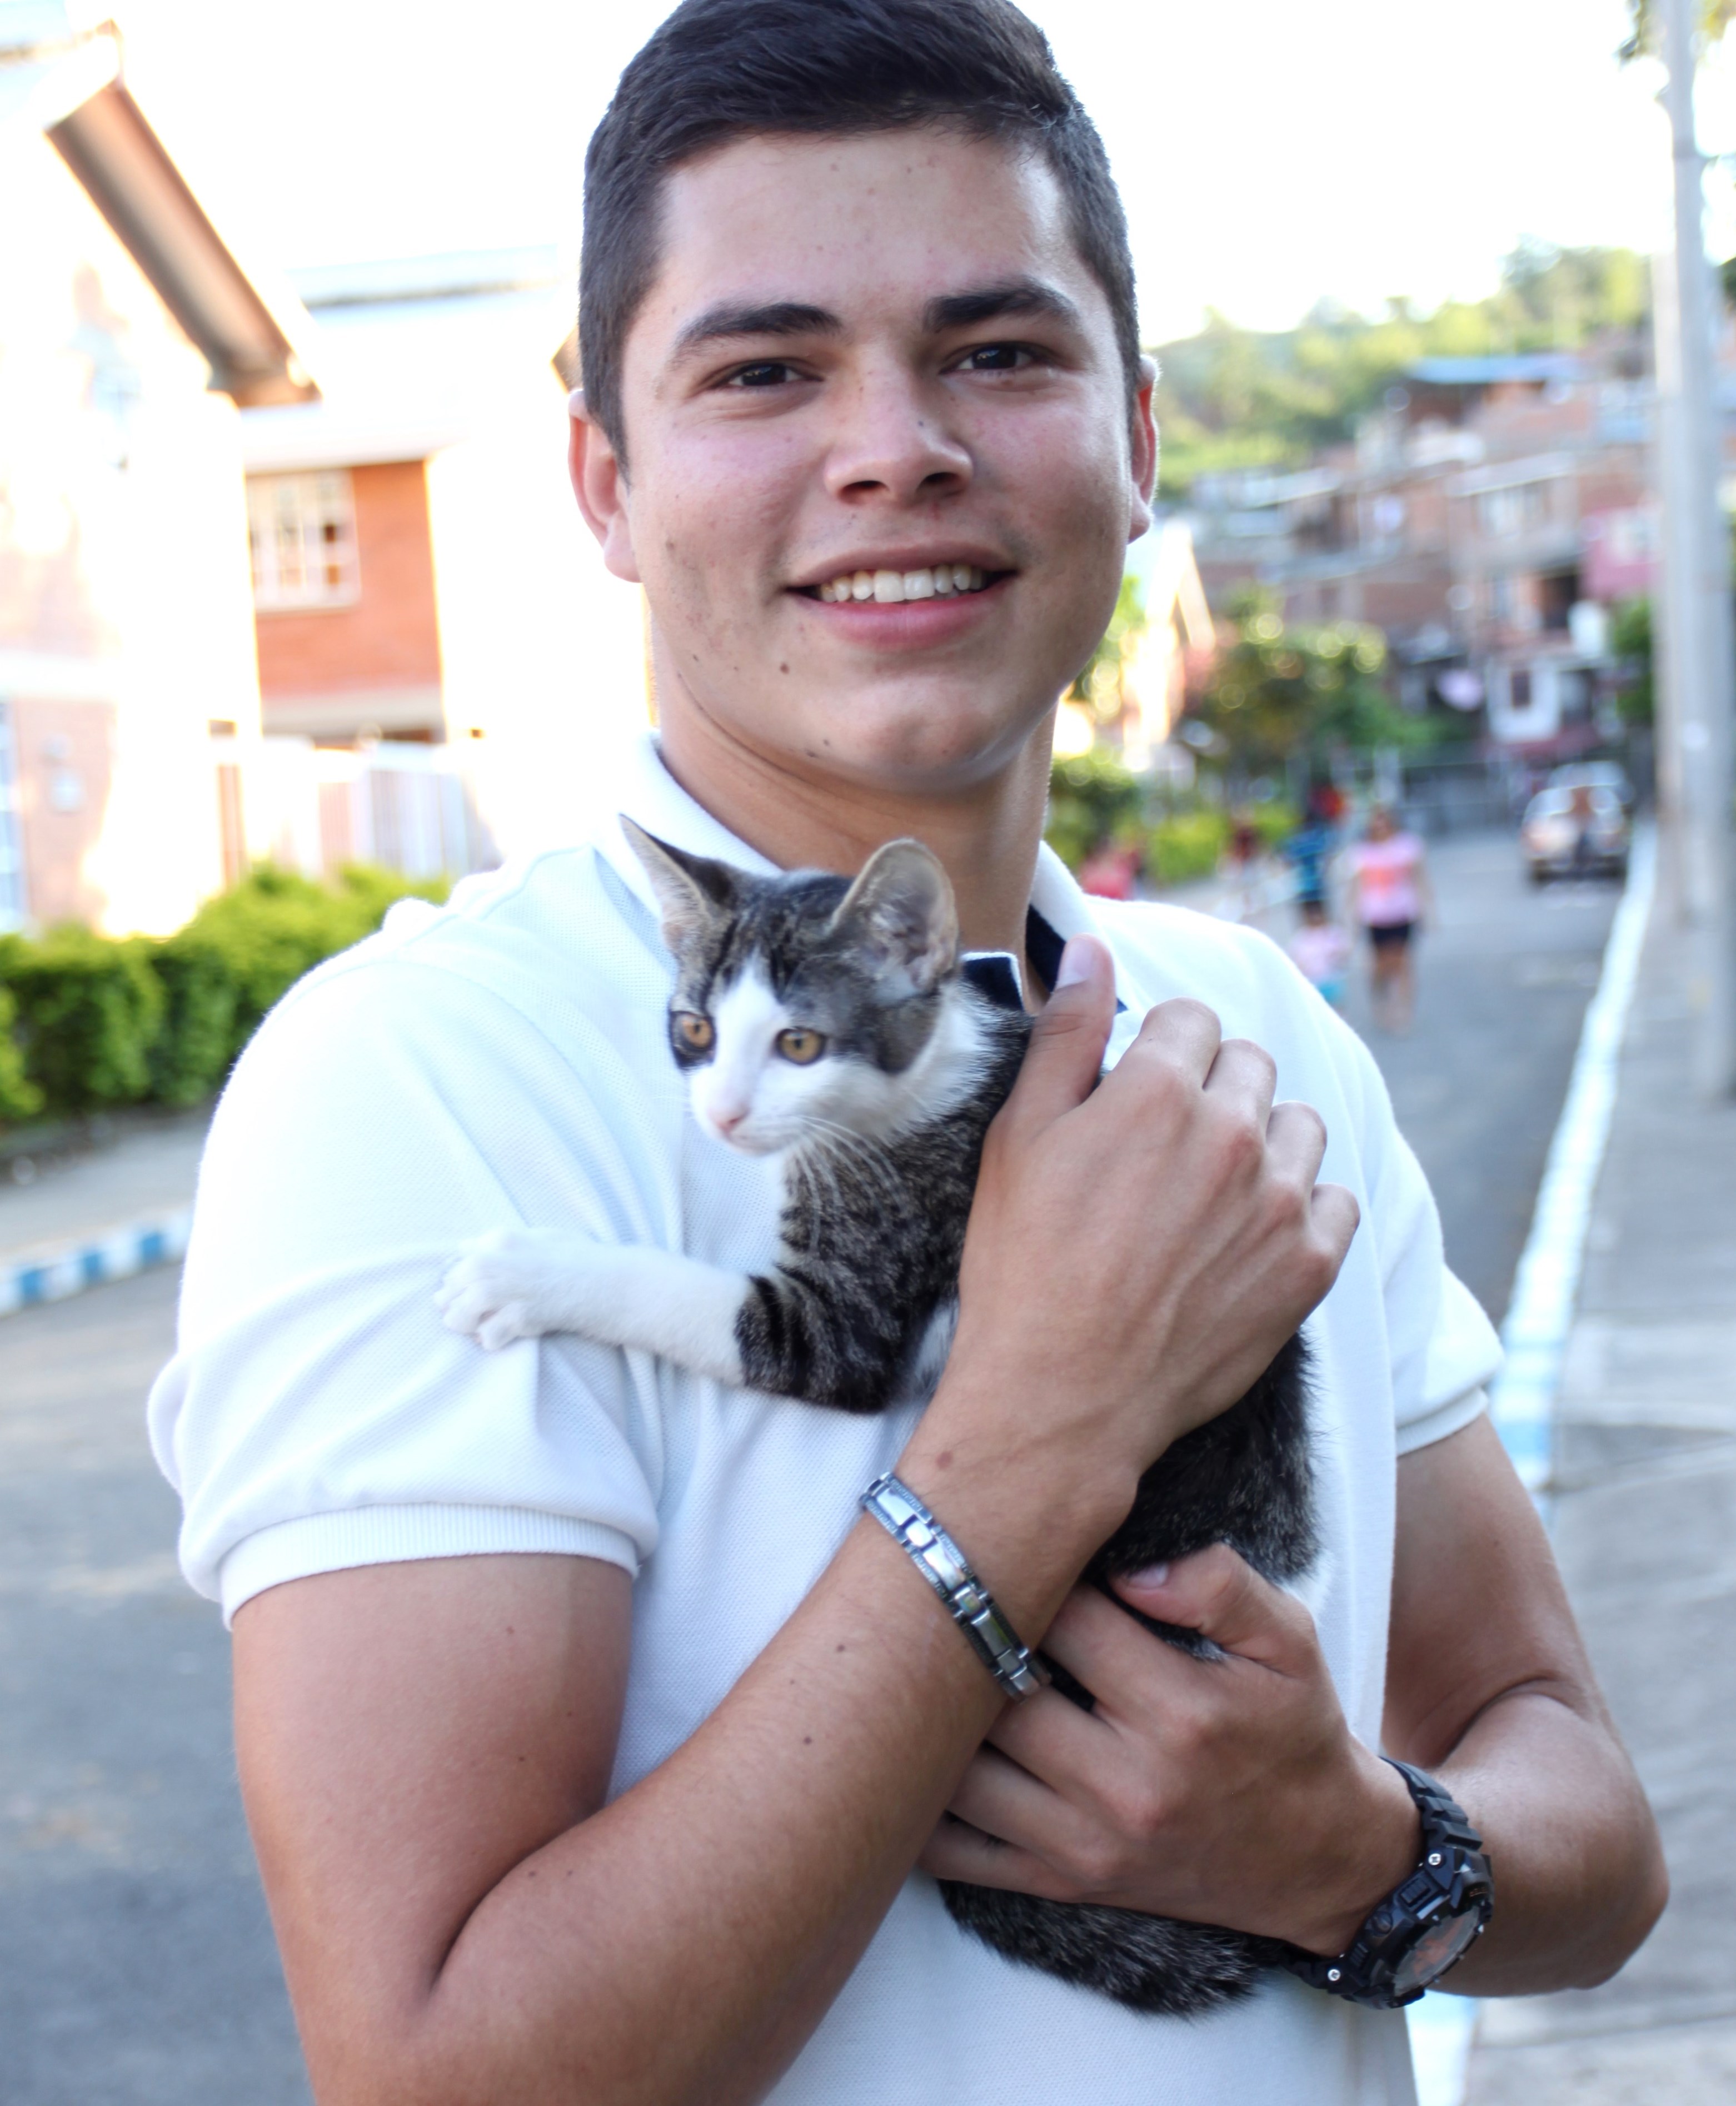 Geinson med sin kjære katt. Foto: SOS-barnebyer